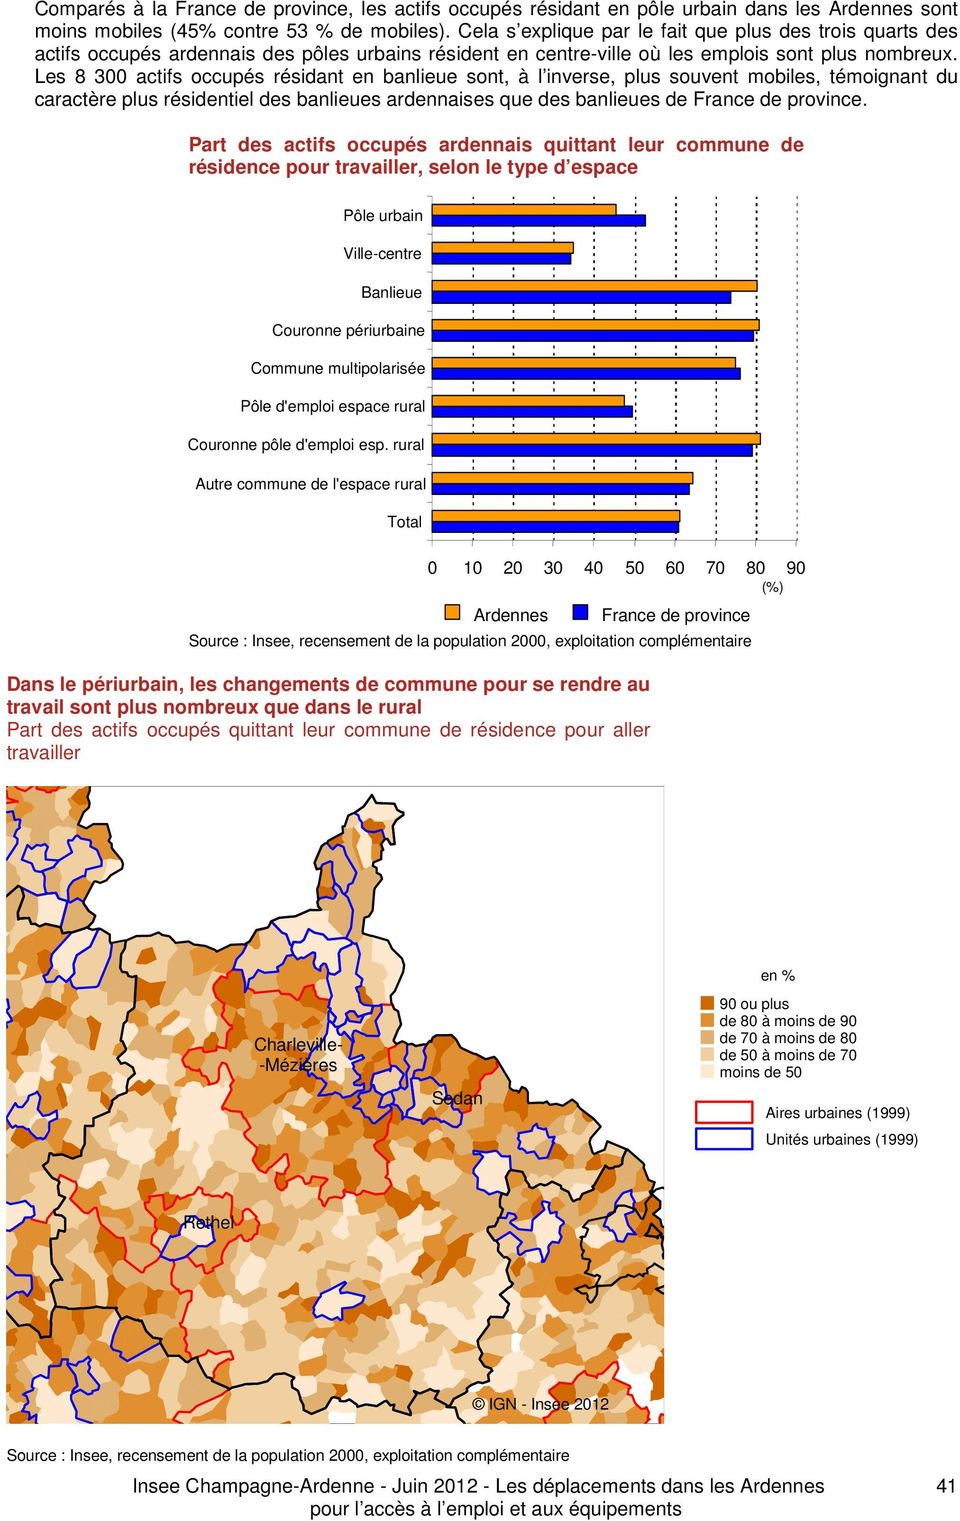 Les 8 300 actifs occupés résidant en banlieue sont, à l inverse, plus souvent mobiles, témoignant du caractère plus résidentiel des banlieues ardennaises que des banlieues de France de province.